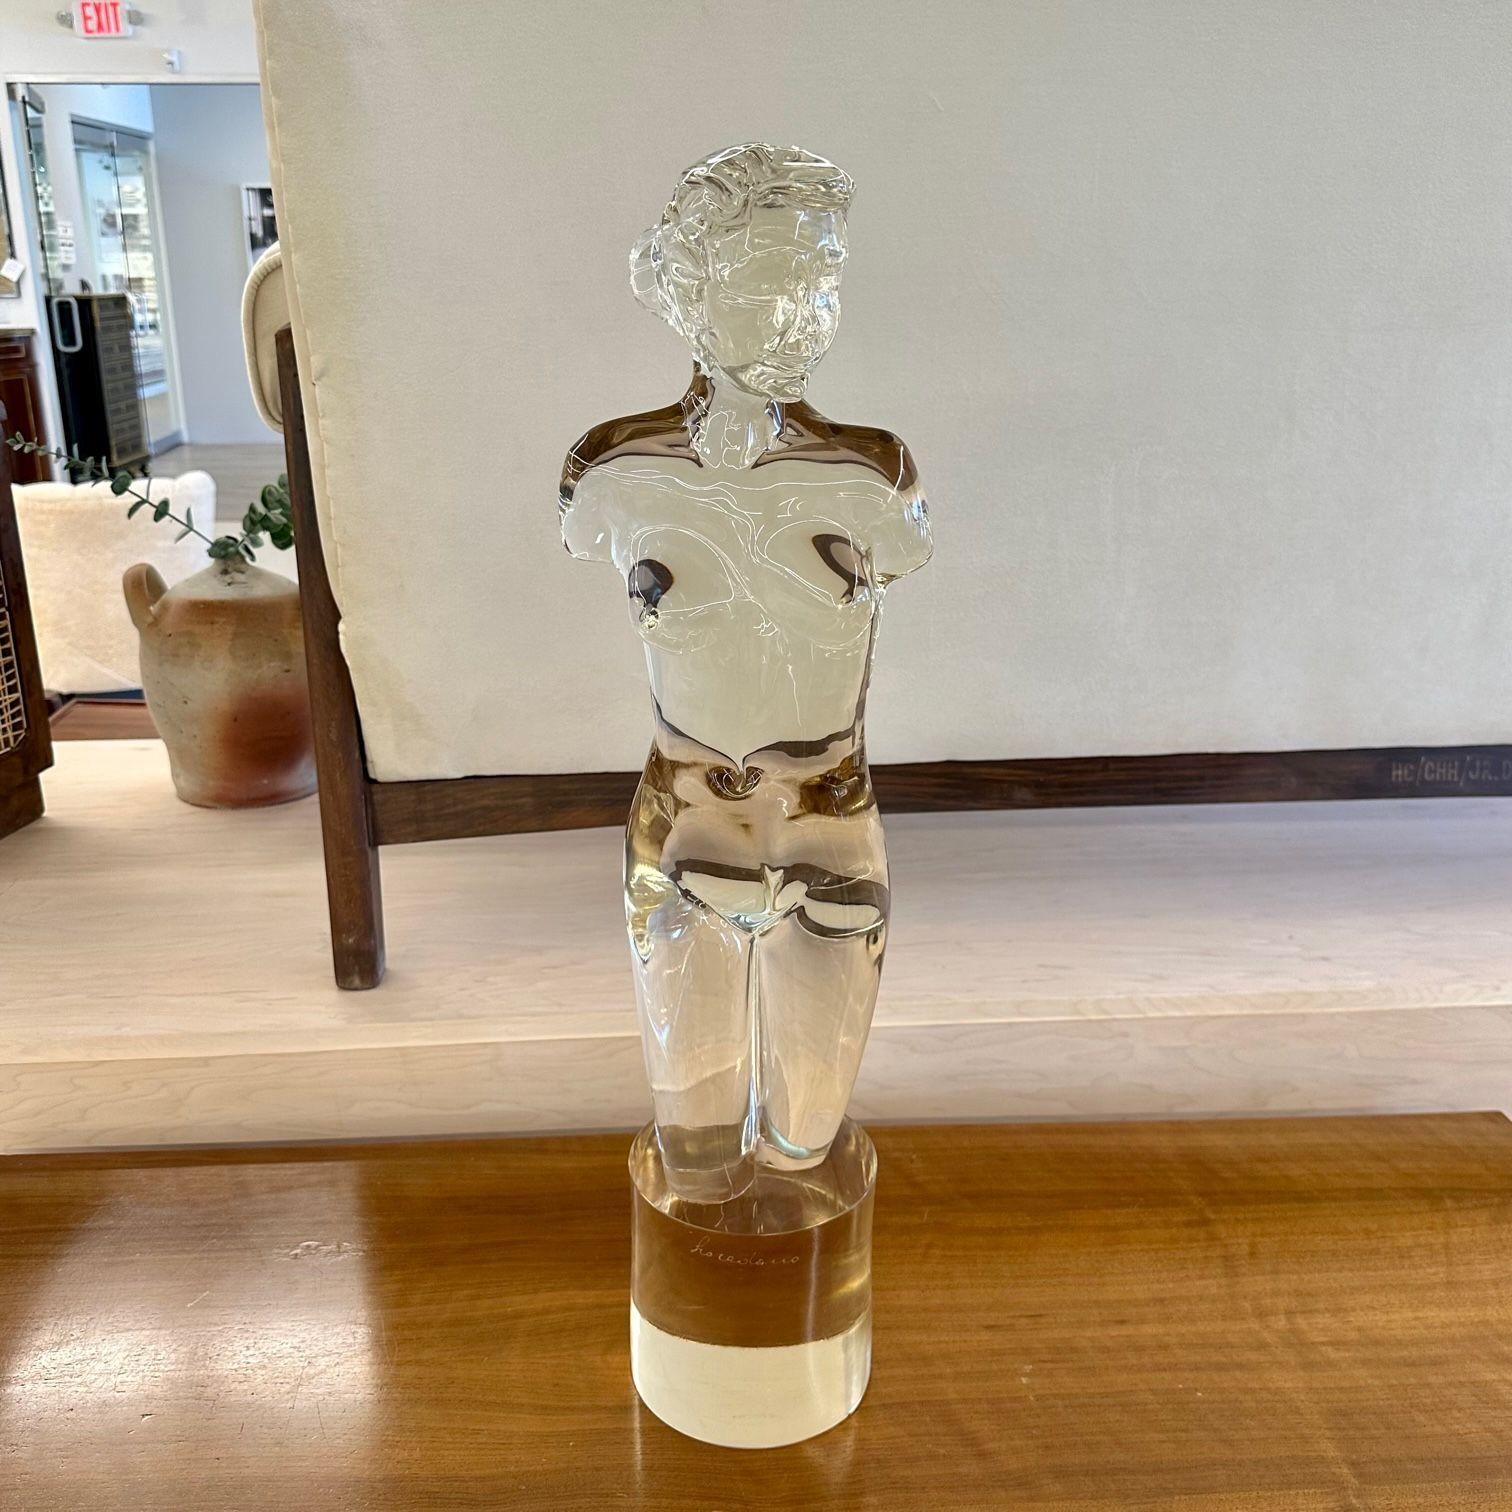 'Venus De Milo' Nude Murano Glass Sculpture / Statue, Italian Mid-Century Modern
A solid murano glass sculpture of a female nude on a pedestal by Loredano Rosin (1936-91) for Archimede Seguso. 
Murano Glass
Italy, 1950s
Pxa